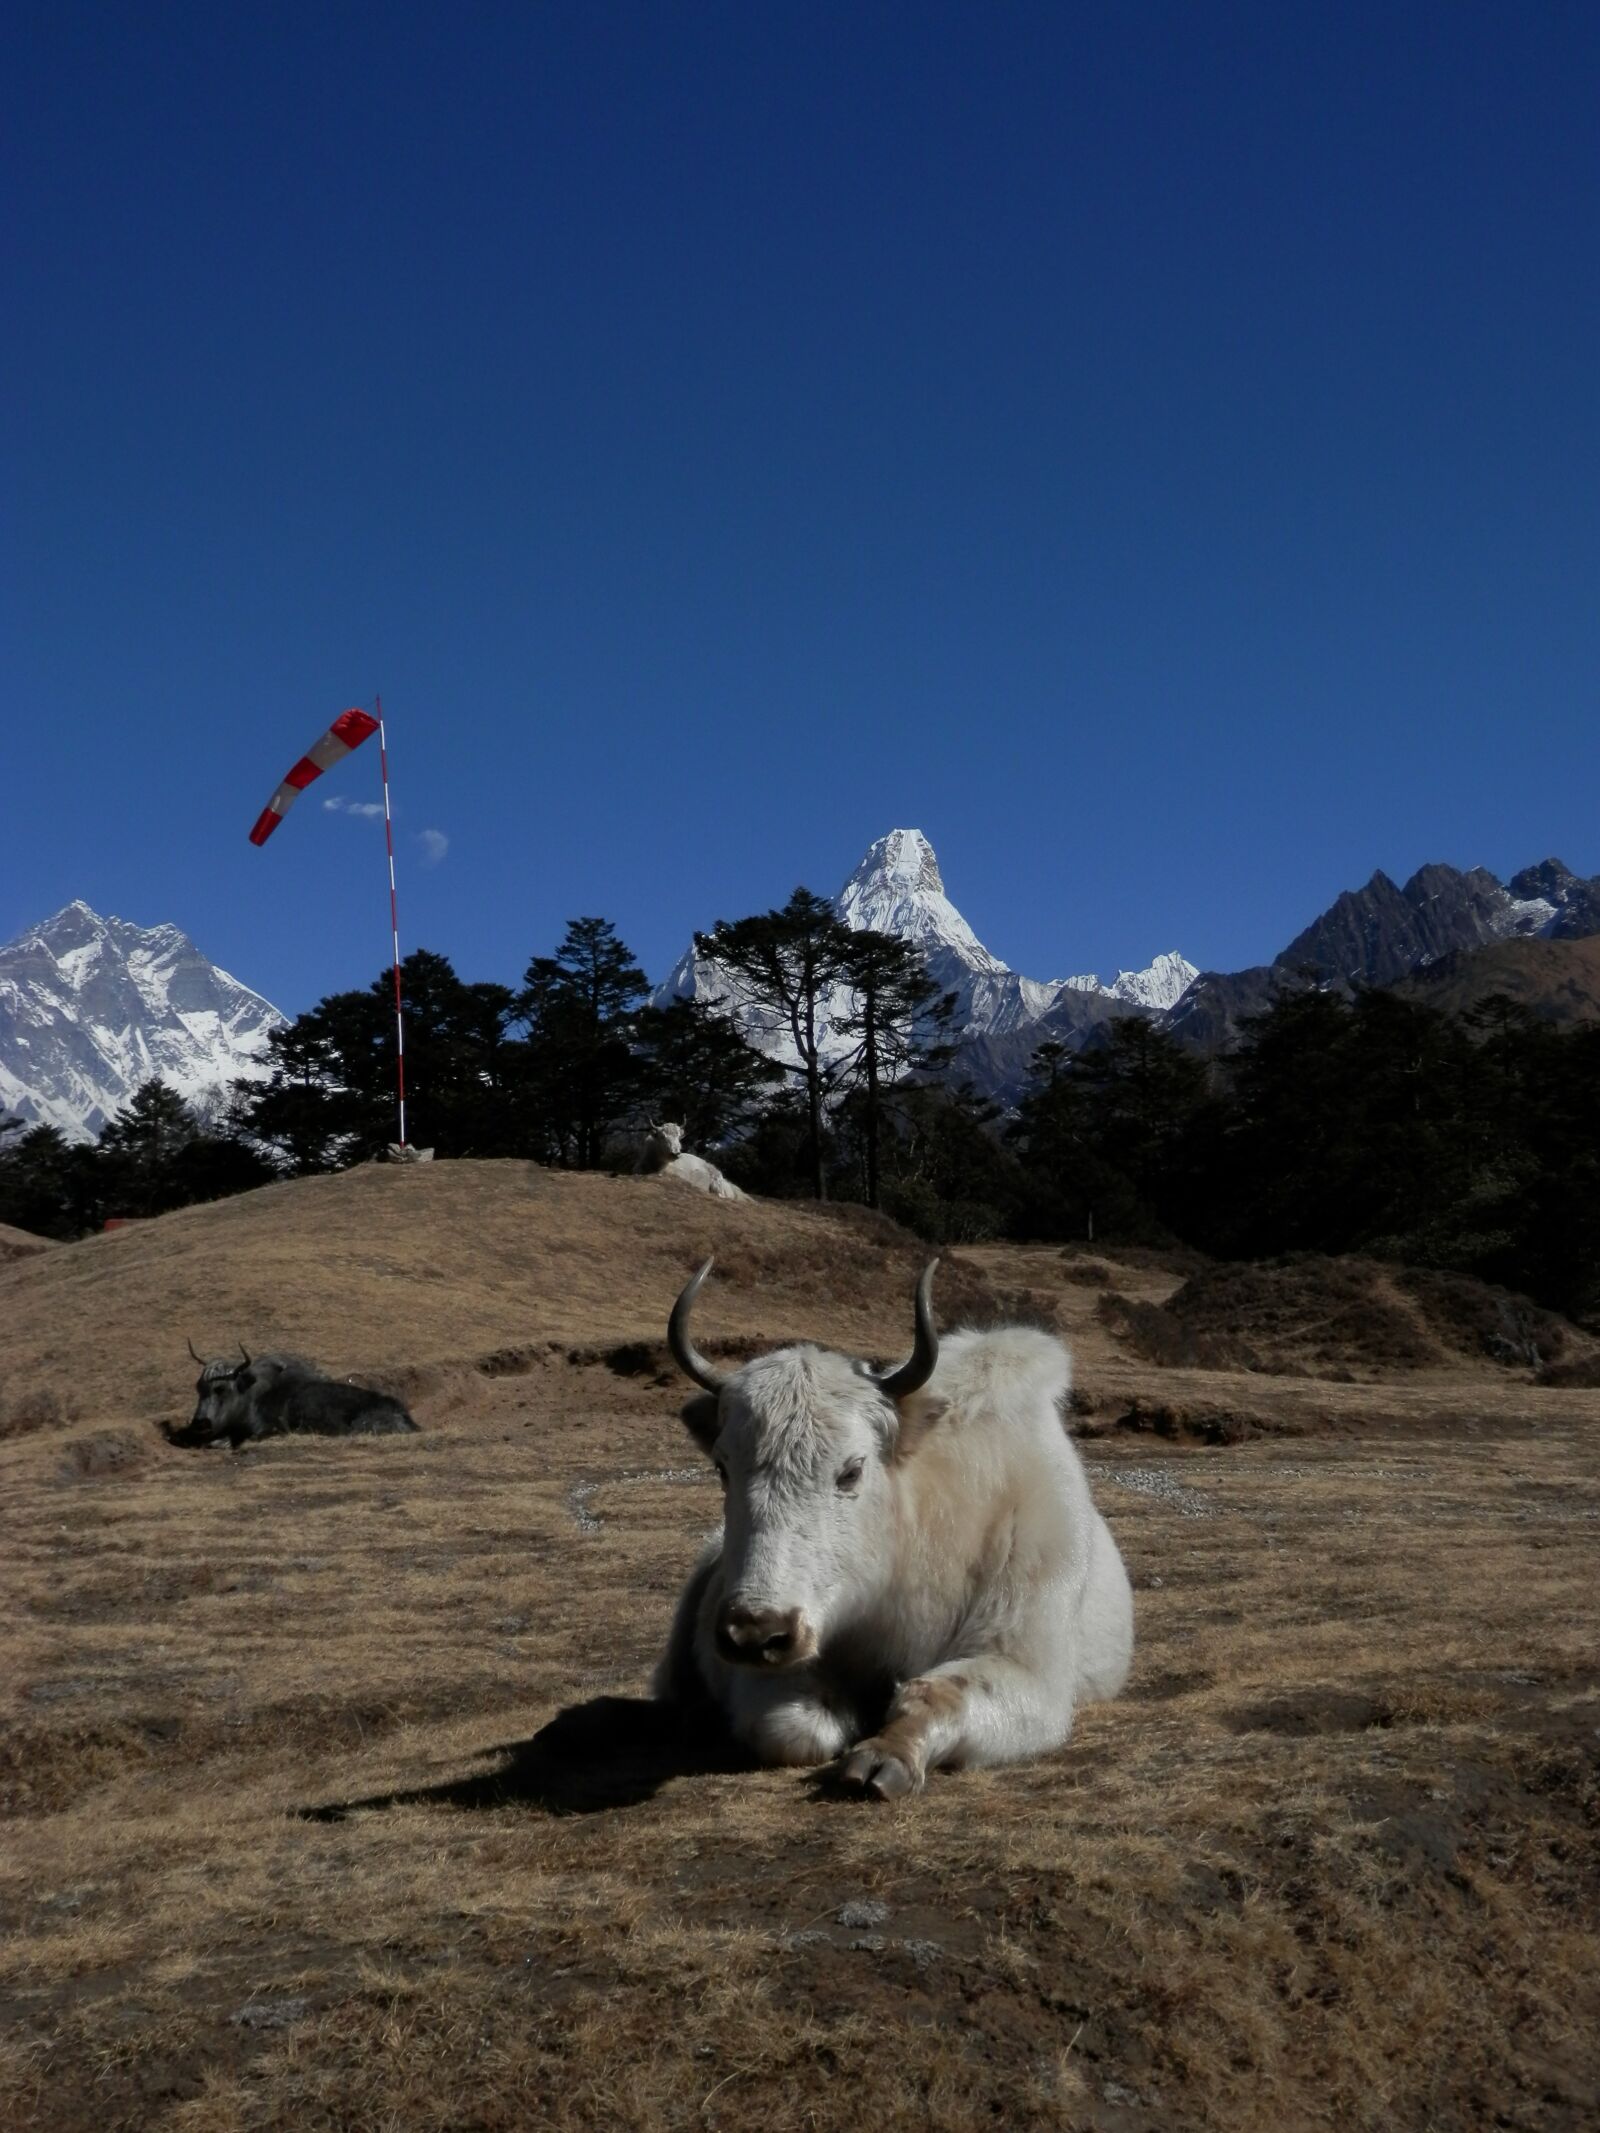 Olympus SZ-14 sample photo. Everest, lhotse, nepal photography